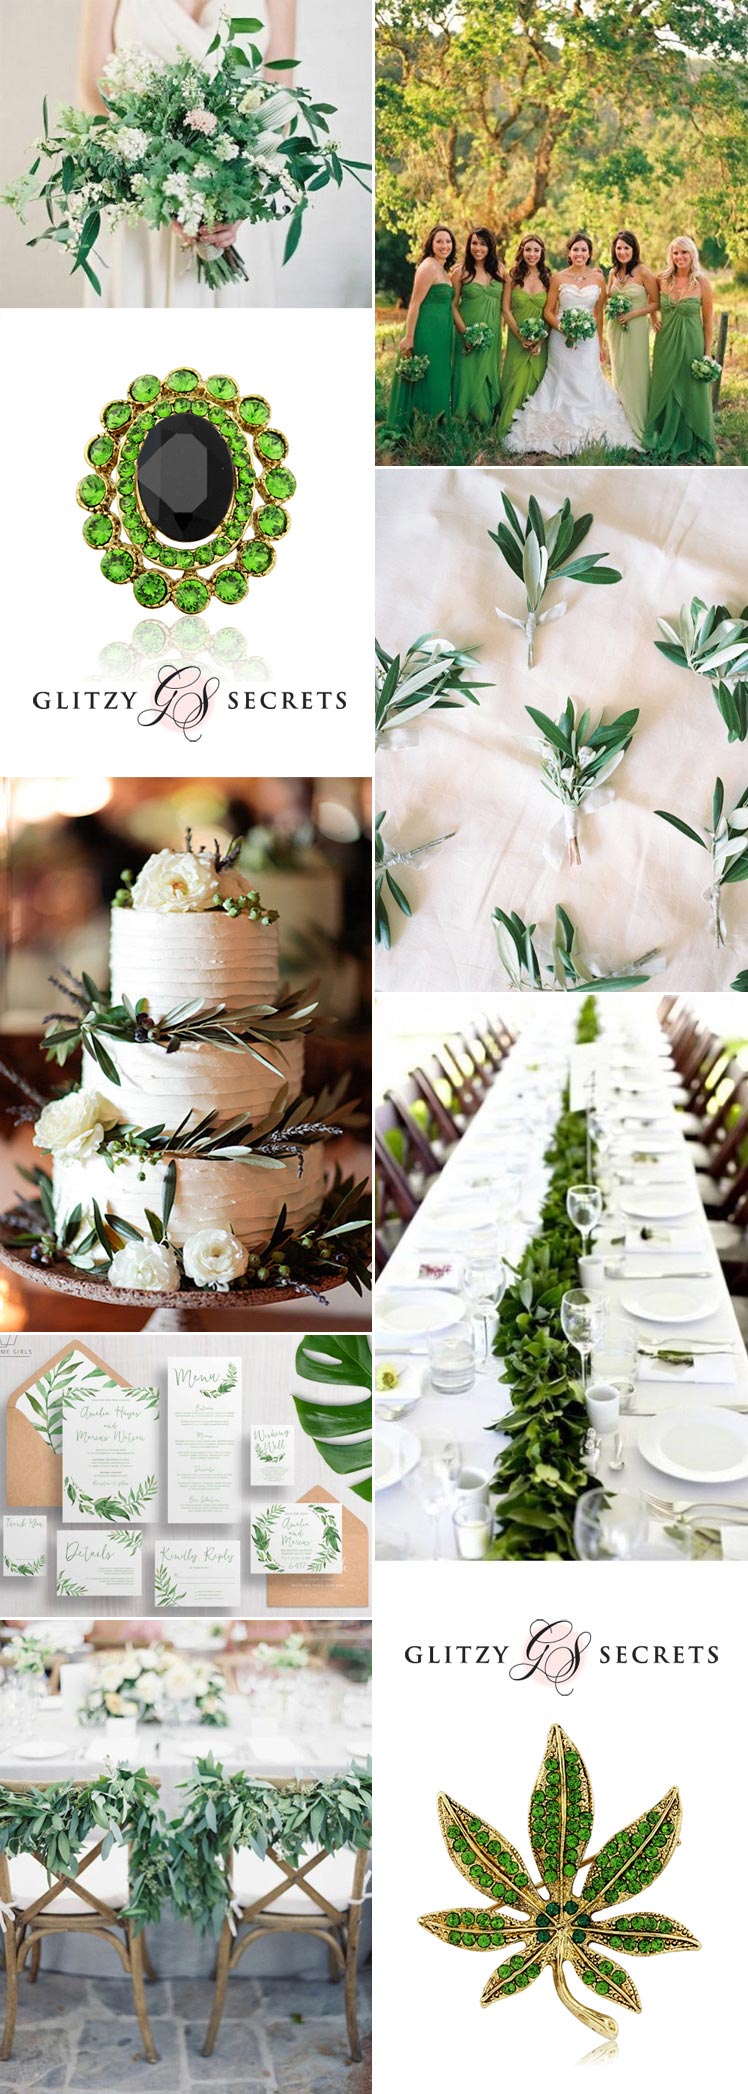 Ideas for a green wedding colour scheme